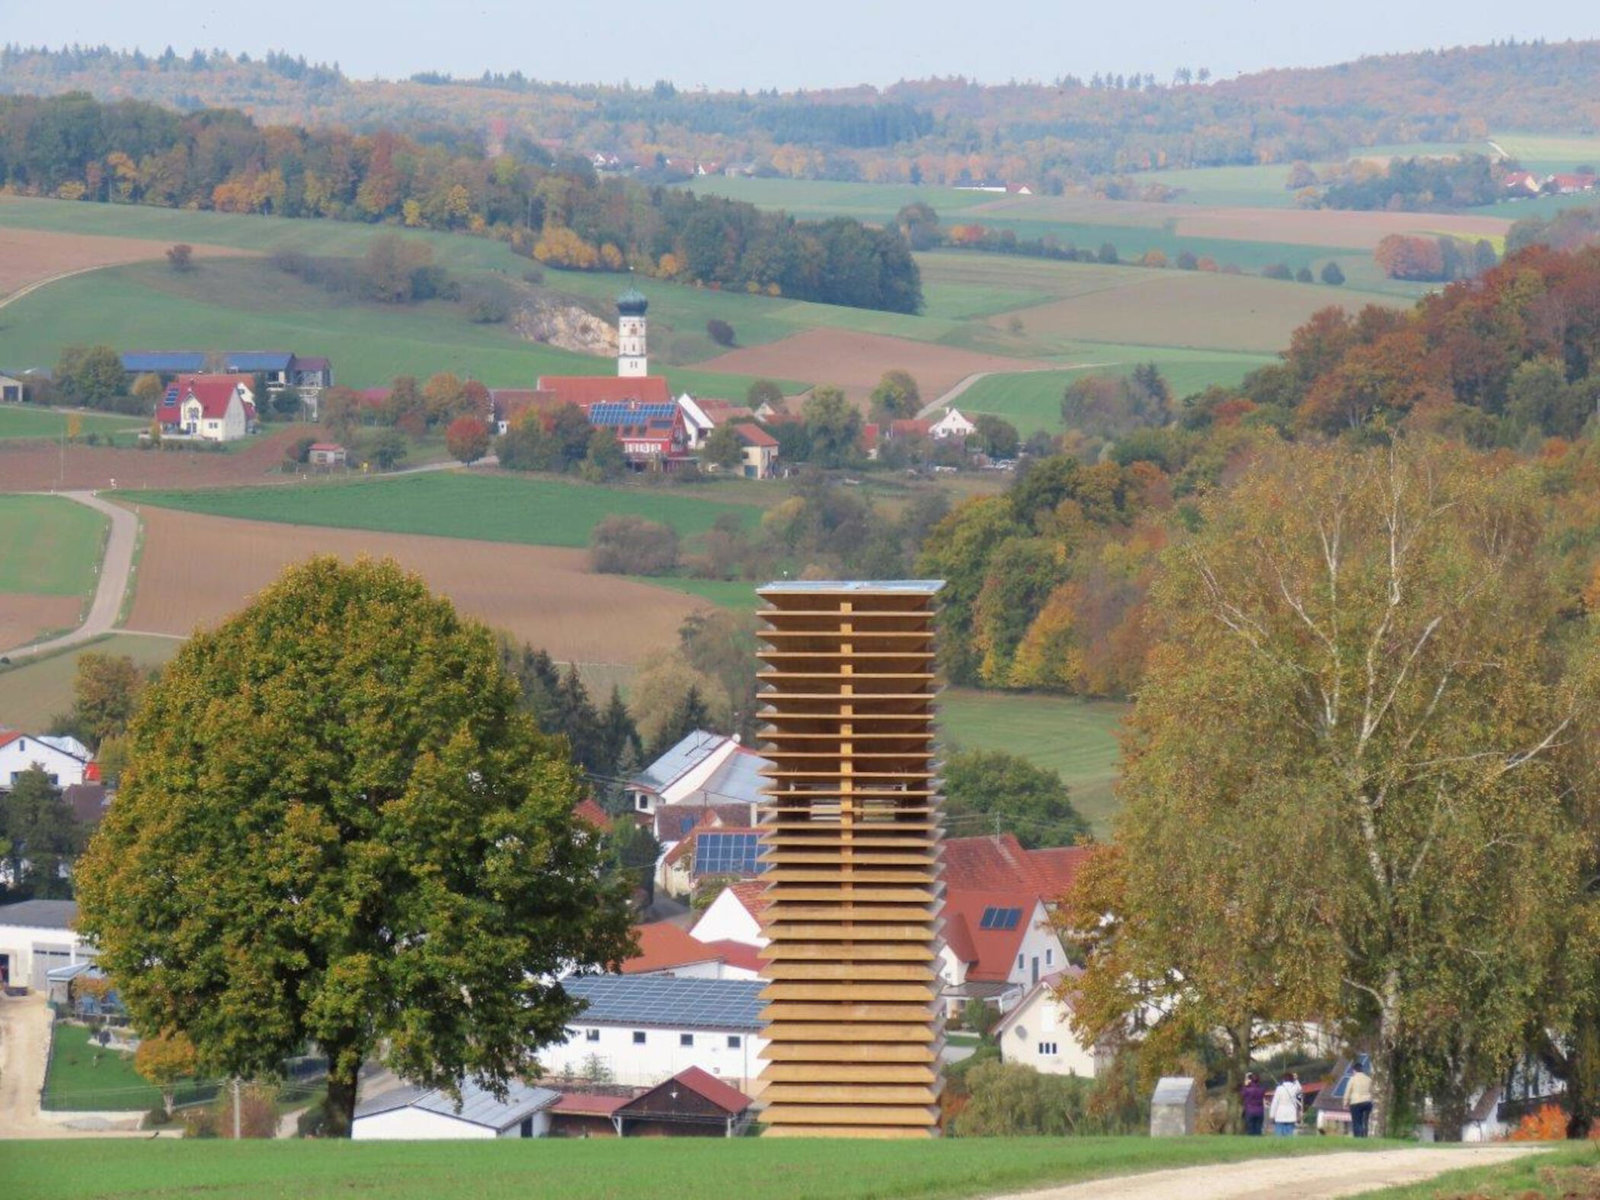 Holzturm